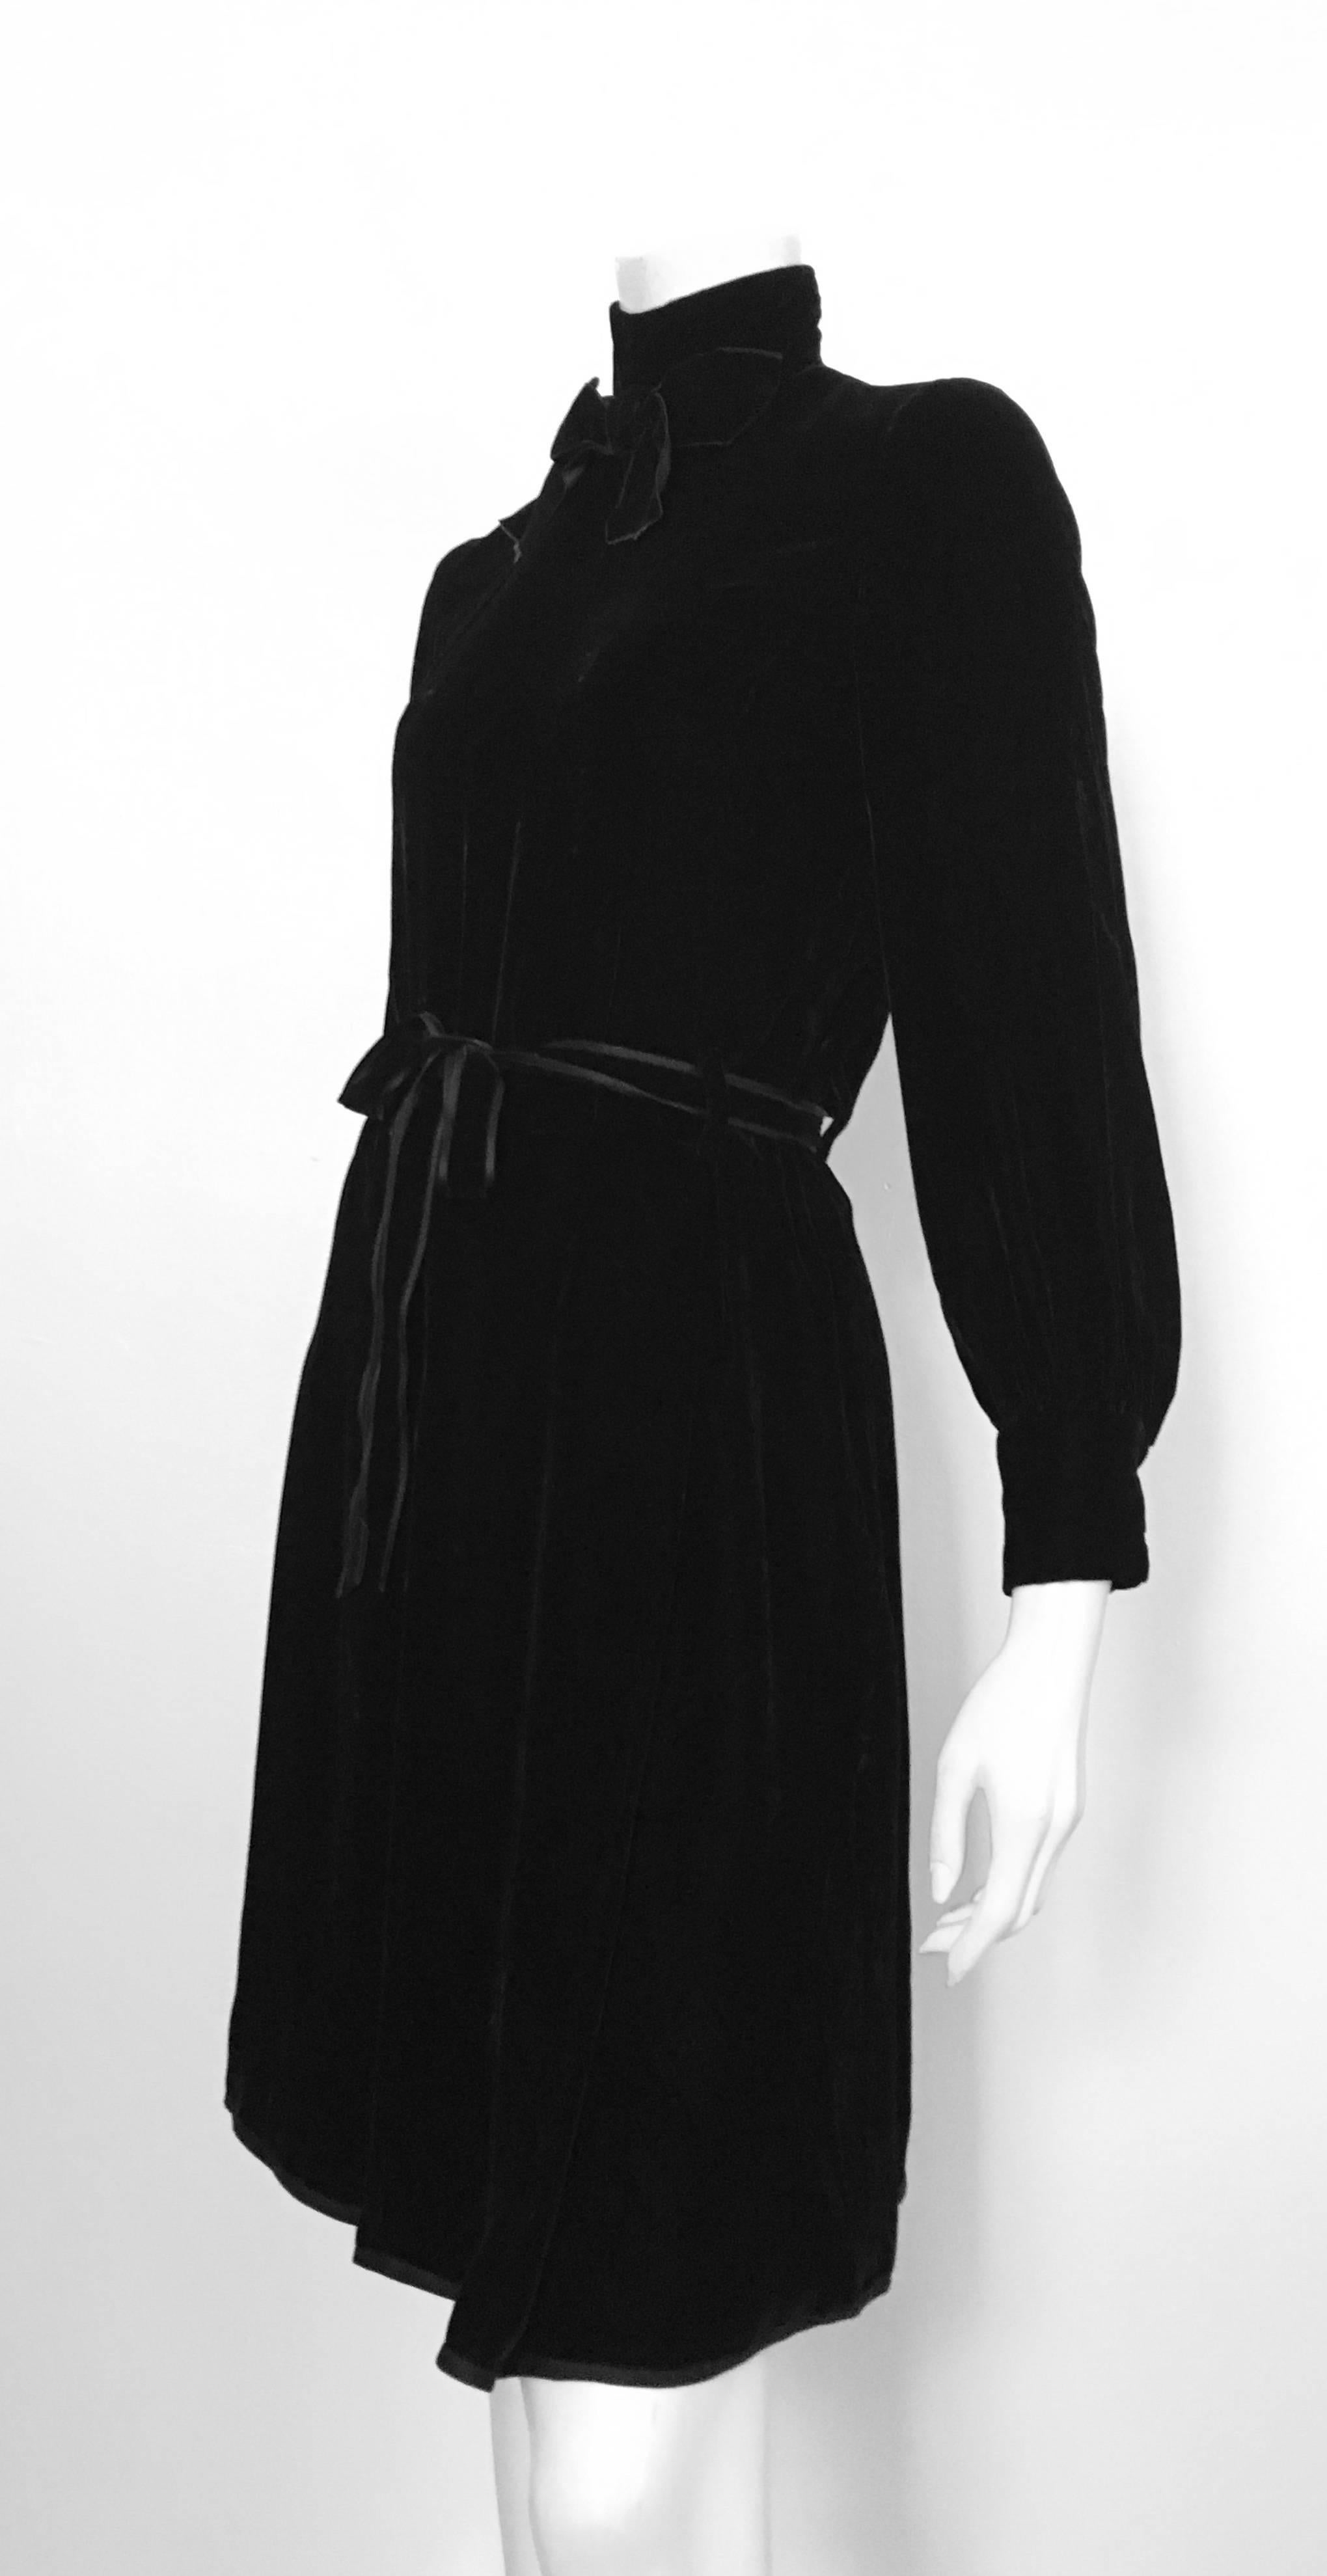 Dior for El Jay 1960s Black Velvet Evening Dress with Bow & Belt Size 6. 2